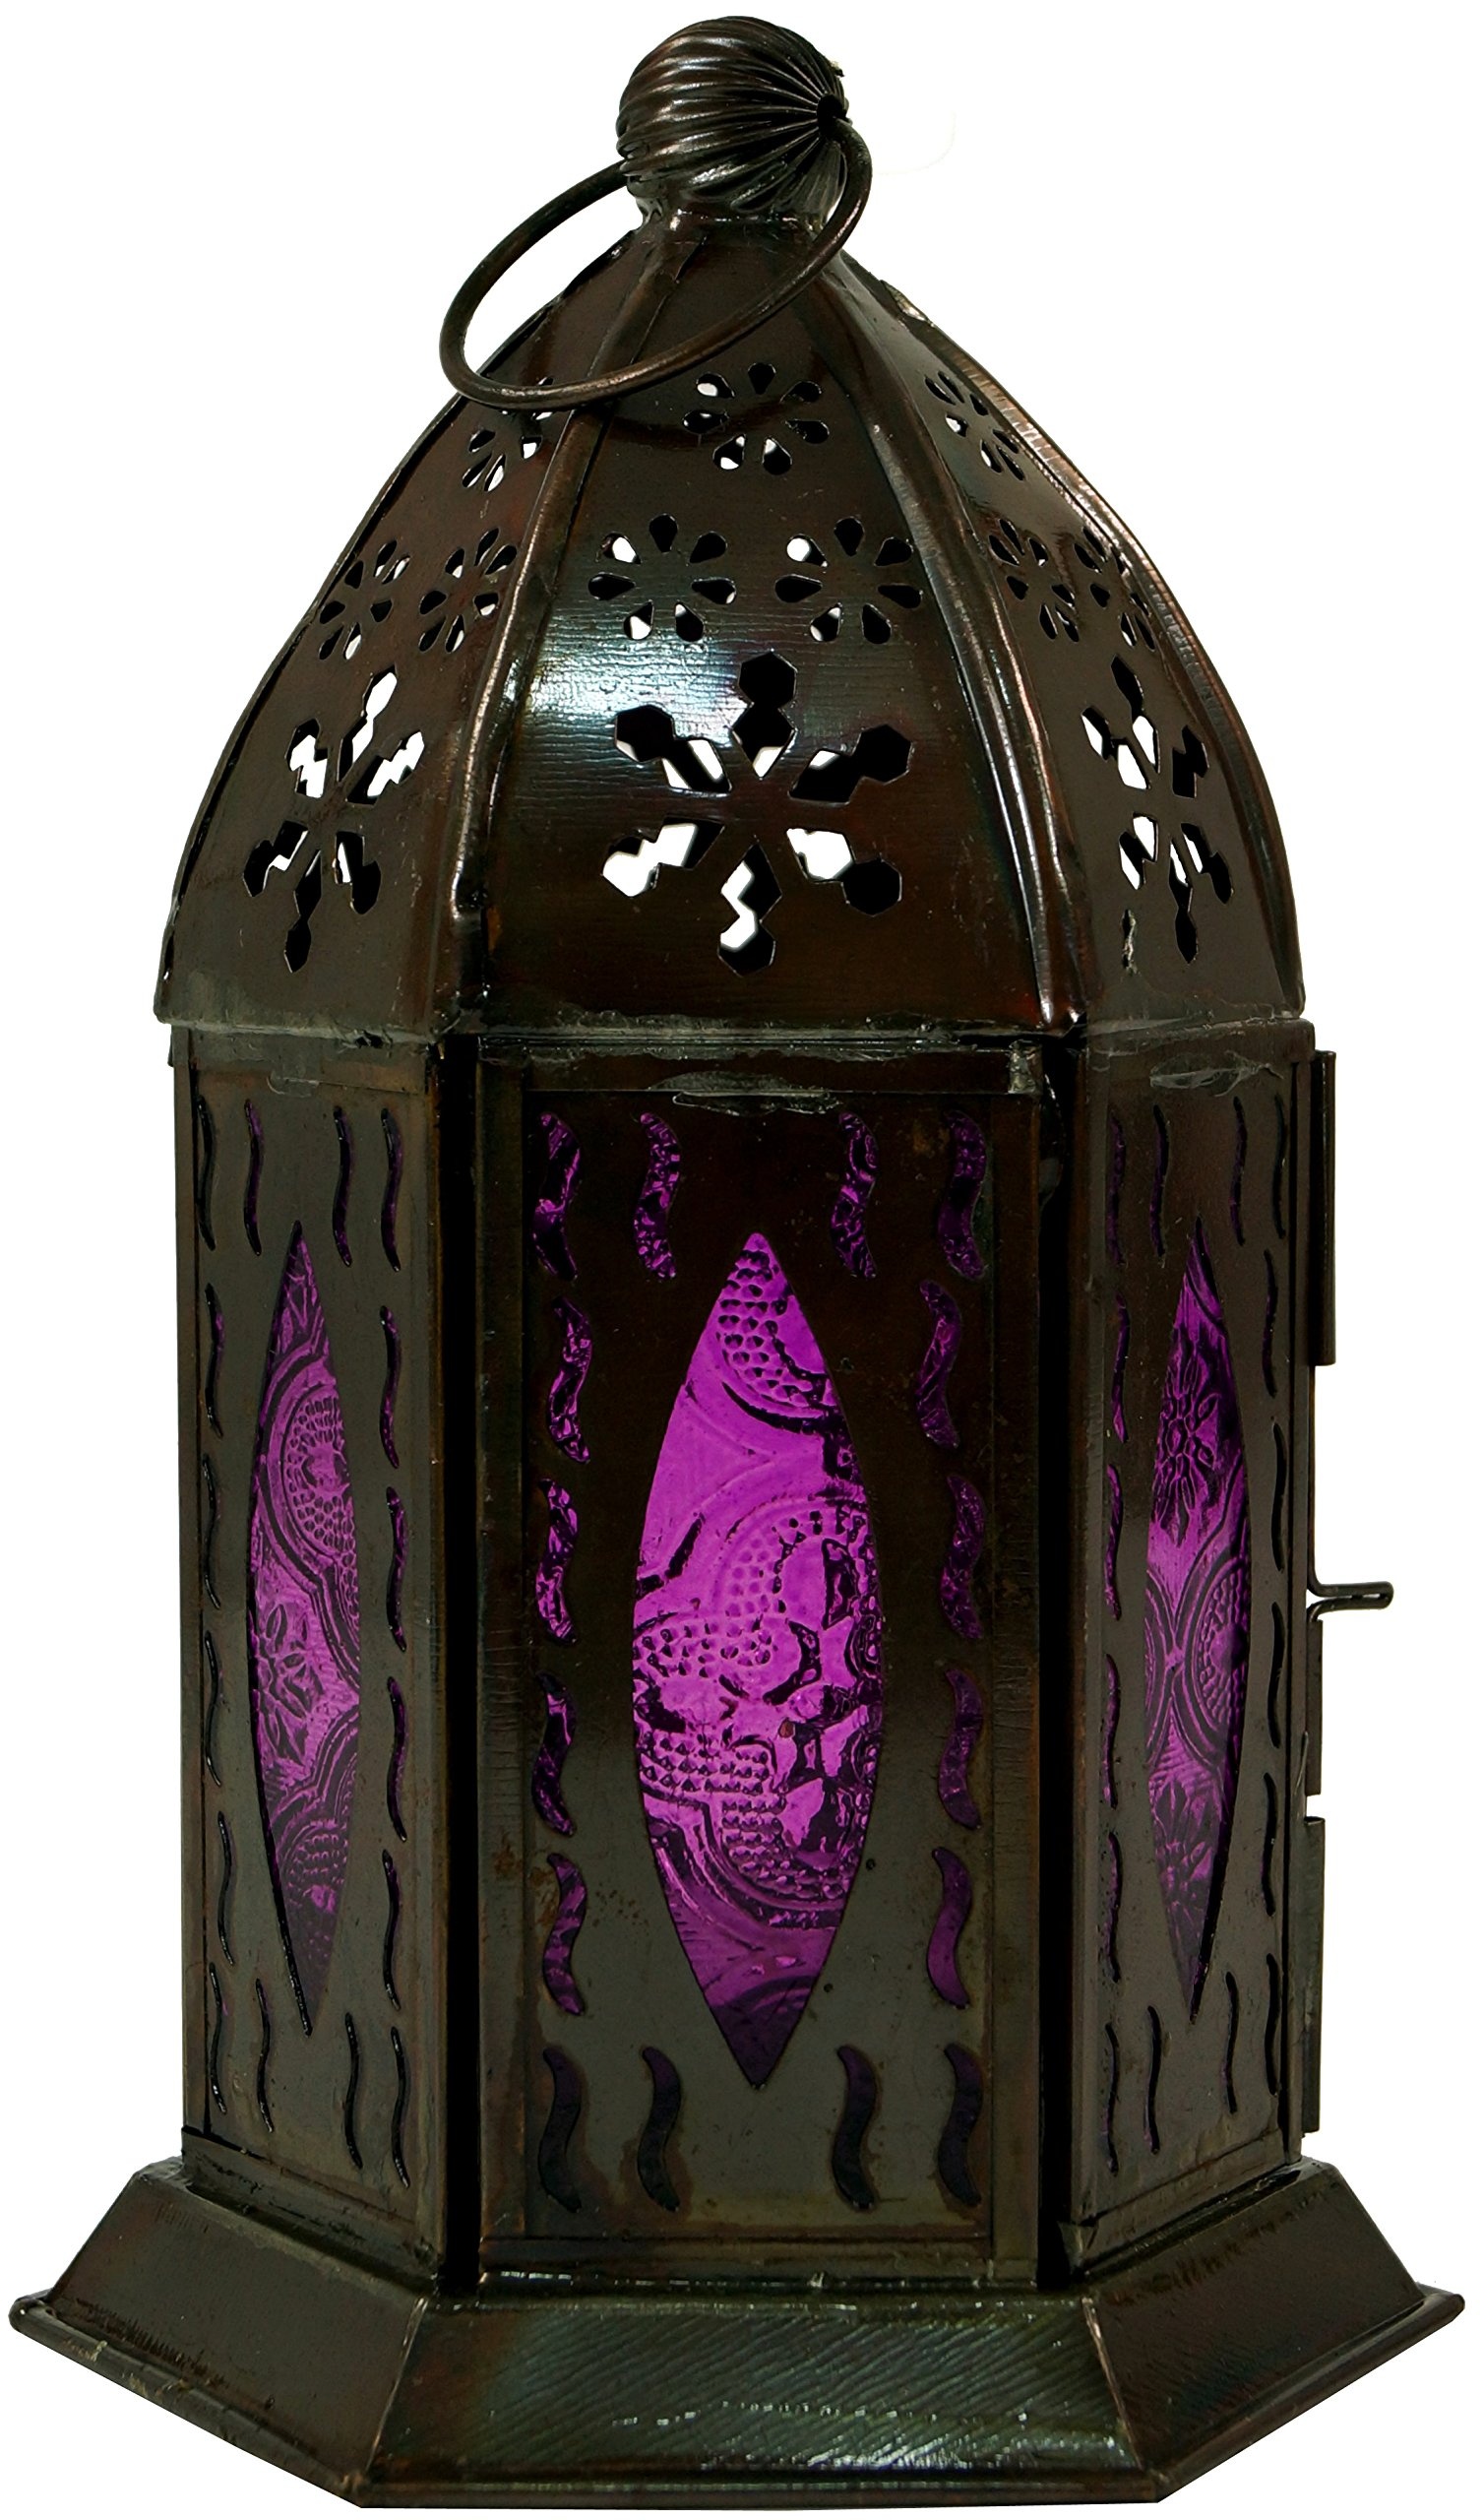 GURU SHOP Orientalische Metall/Glas Laterne in Marrokanischem Design, Windlicht ., Lila, Farbe: Lila, 18x10x10 cm, Orientalische Laternen